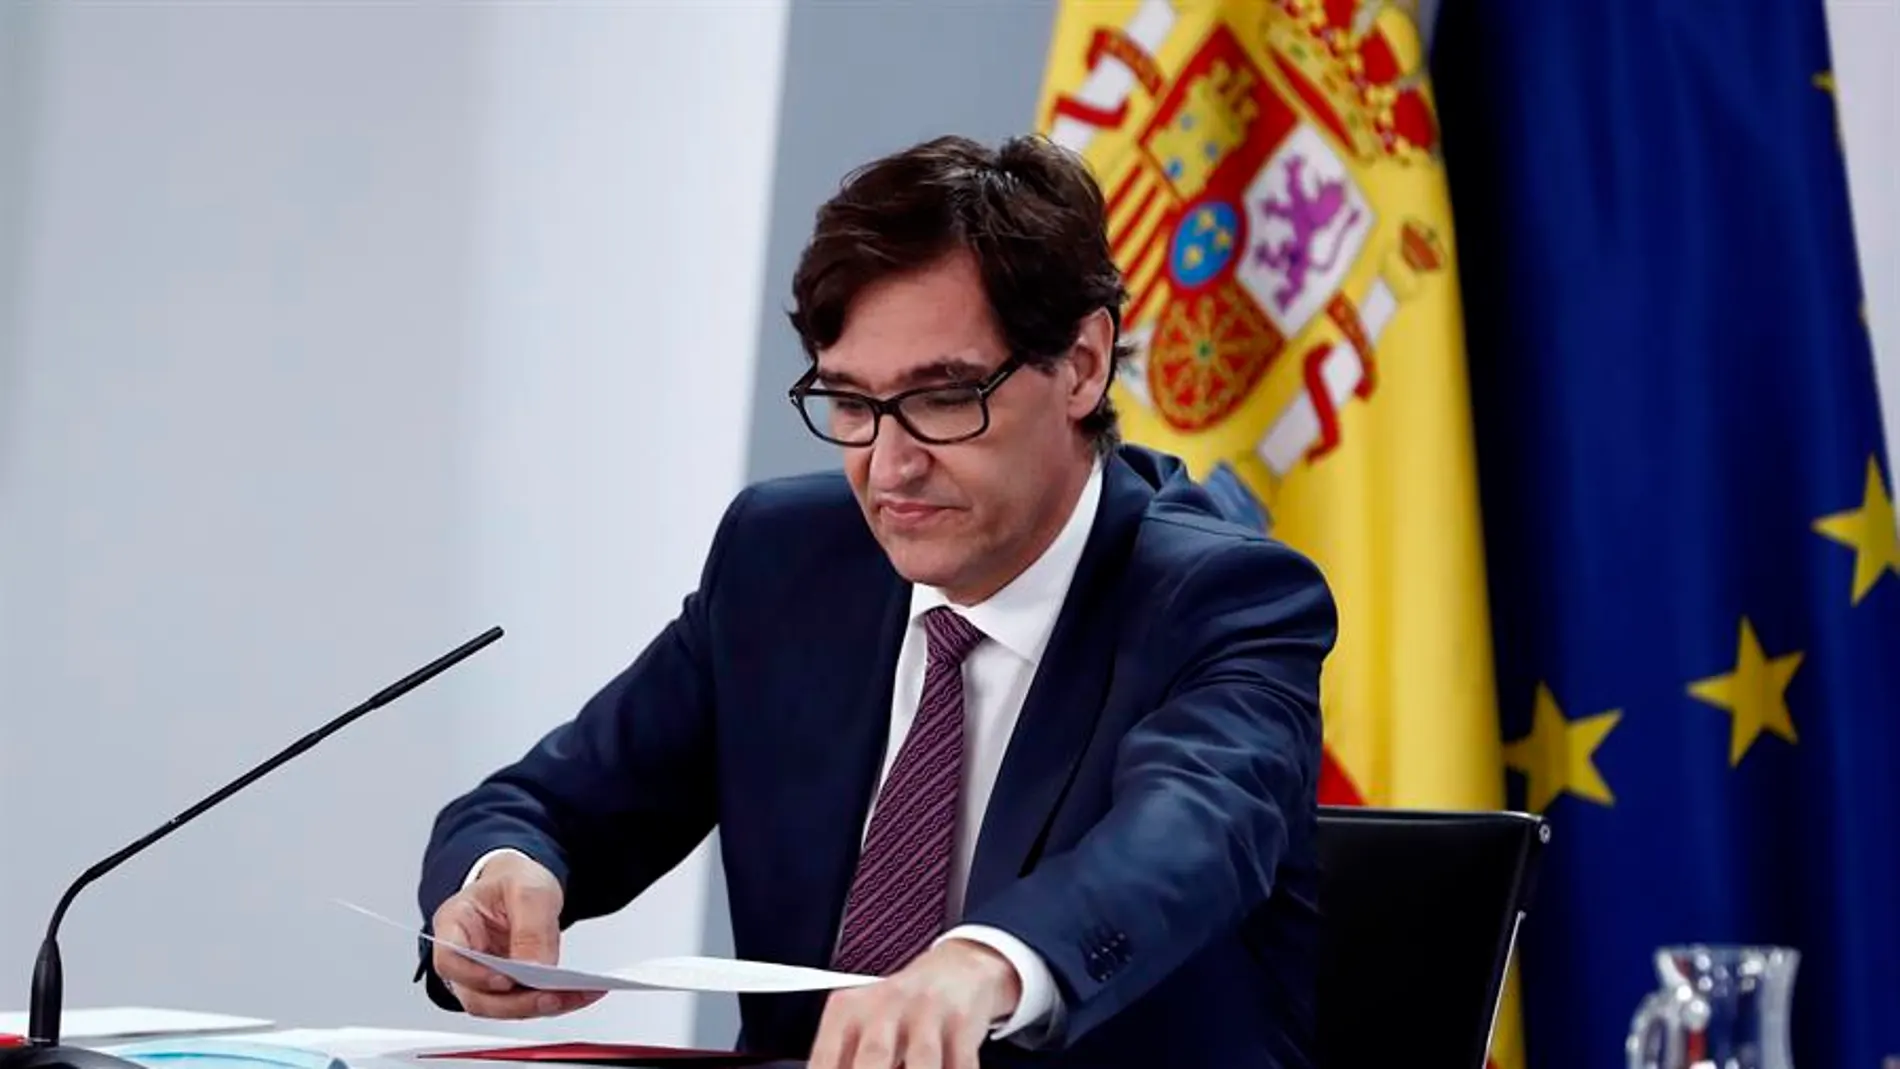 Salvador Illa, ministro de Sanidad, coordinará a Madrid y las dos Castillas por los rebrotes de coronavirus